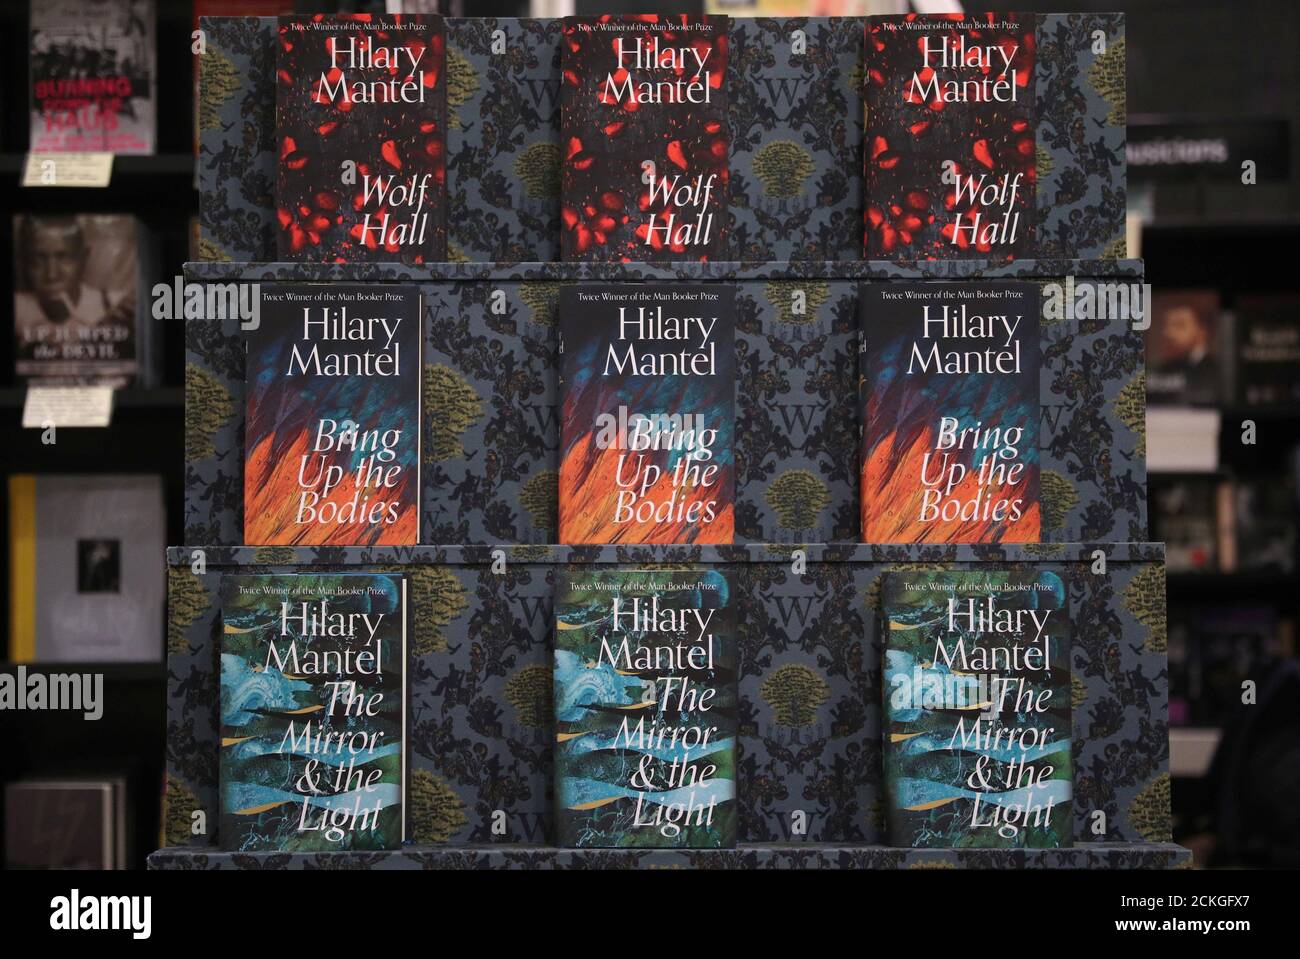 Los libros que forman la trilogía del autor Hilary Mantel sobre Thomas  Cromwell, asesor de Henry VIII, se muestran en una librería en Londres,  Gran Bretaña, el 4 de marzo de 2020.